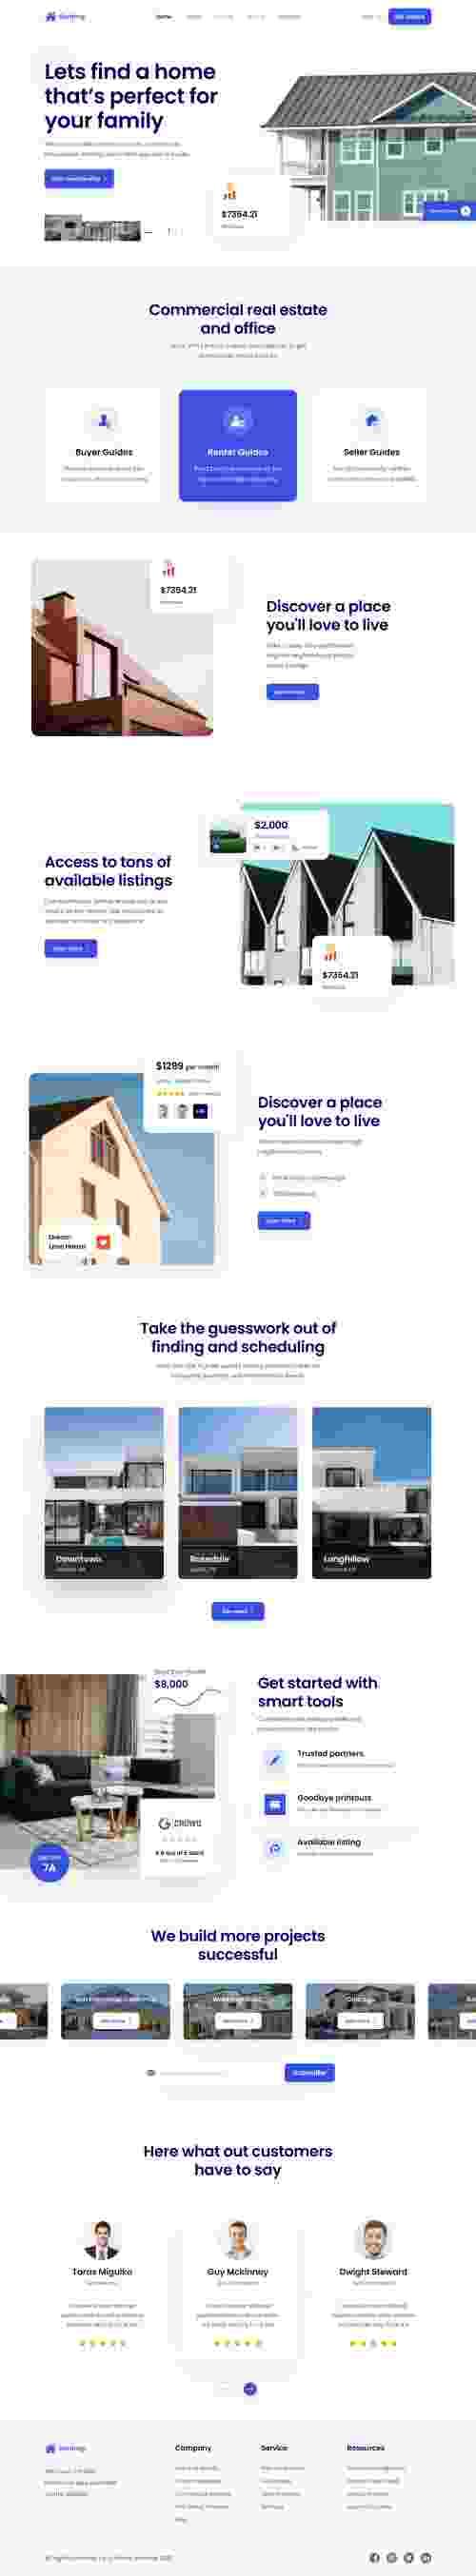 UIHut - Renting Real Estate Landing Page - 12116